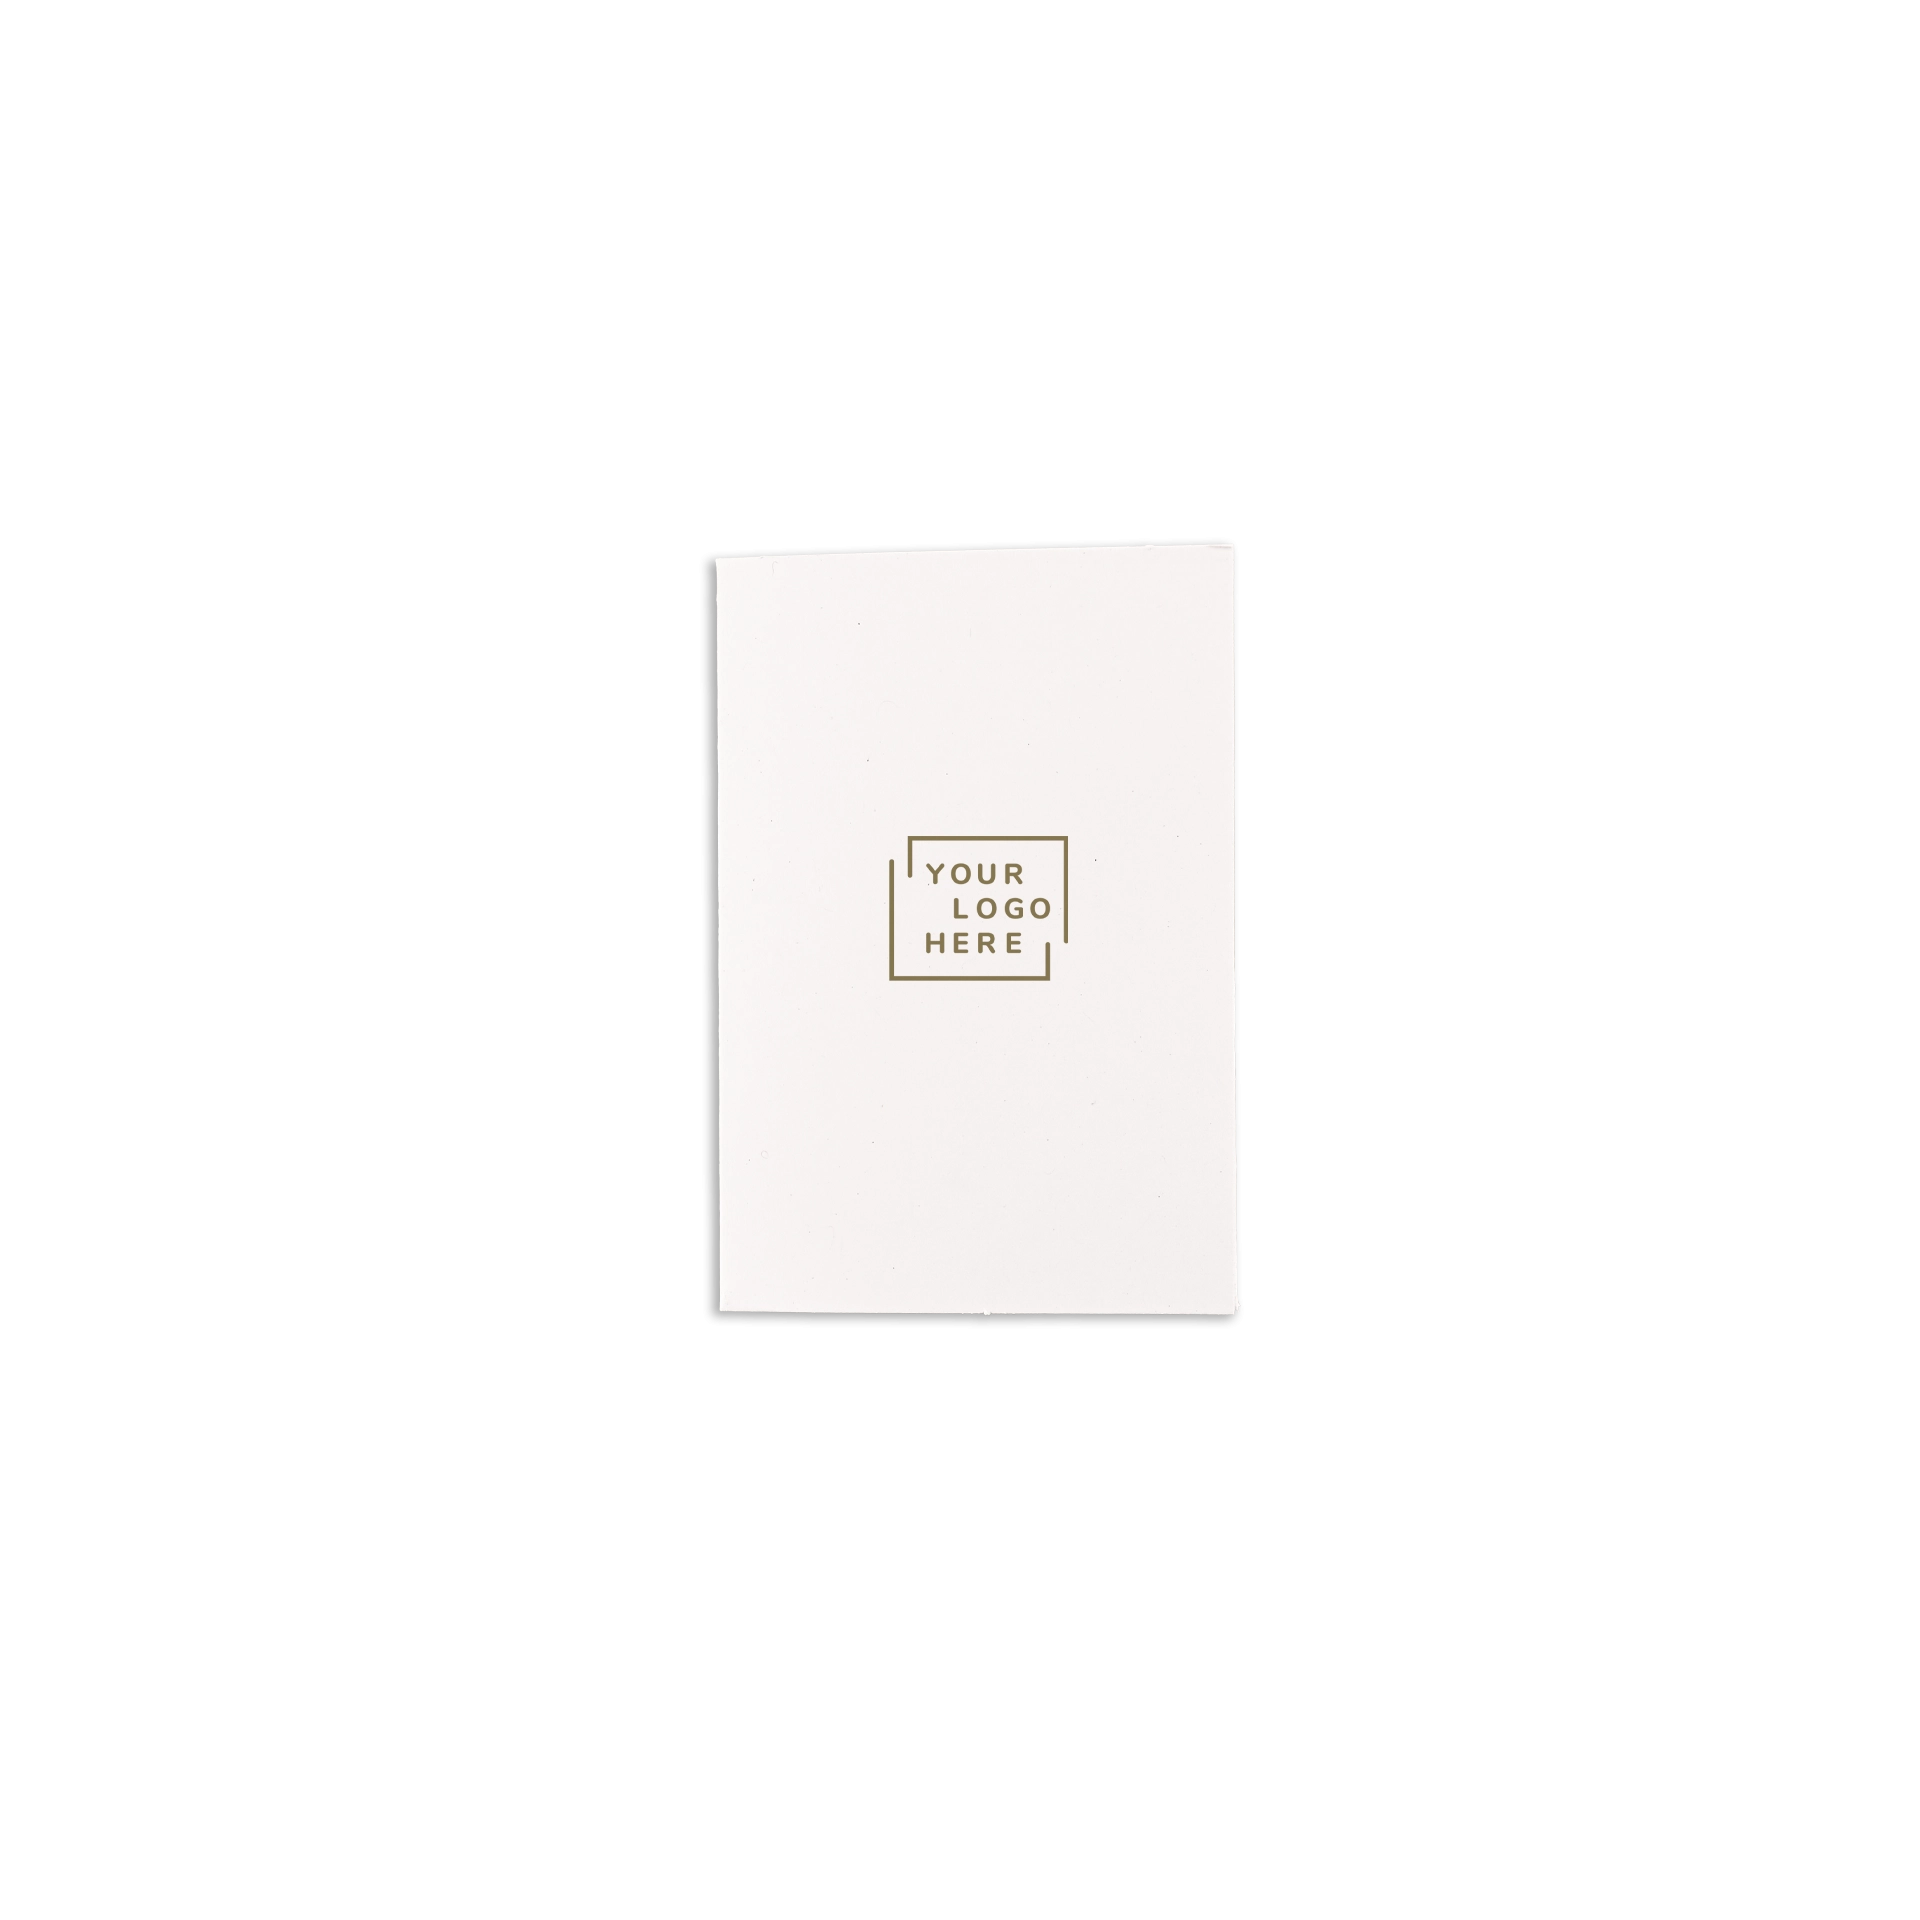 Schlüsseletuikarte D1 7,5x10 cm Papier gestrichen oder Usomano 4/4 fbg. Digitaldruck